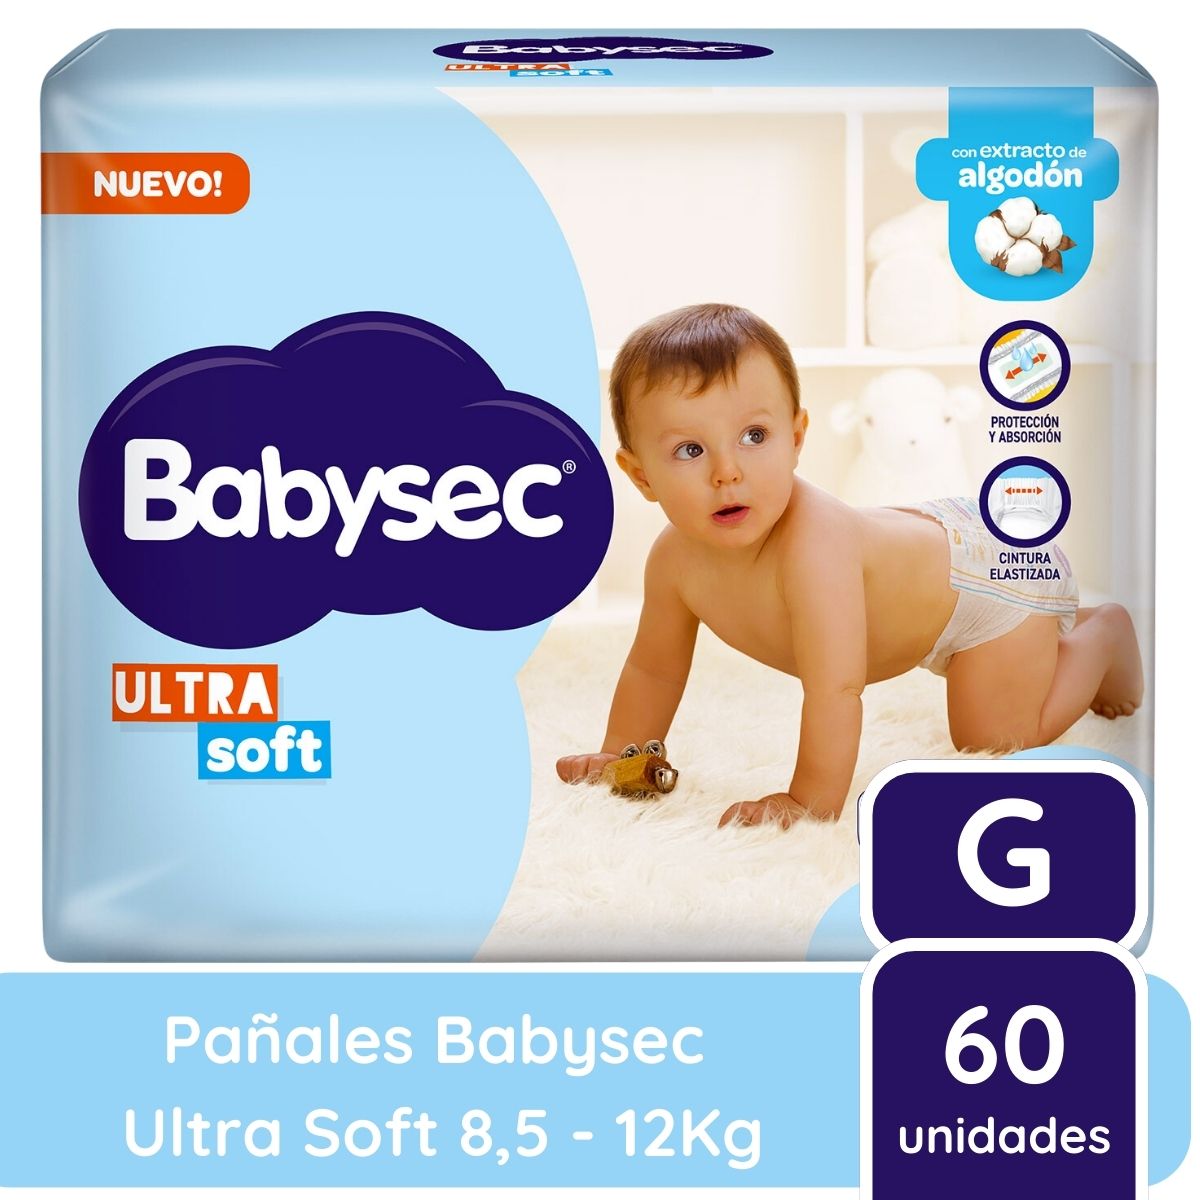 Imagen 1 de 2 de Pañales Babysec Ultra Soft Talle G x60 unidades 8,5 a 12 kilos